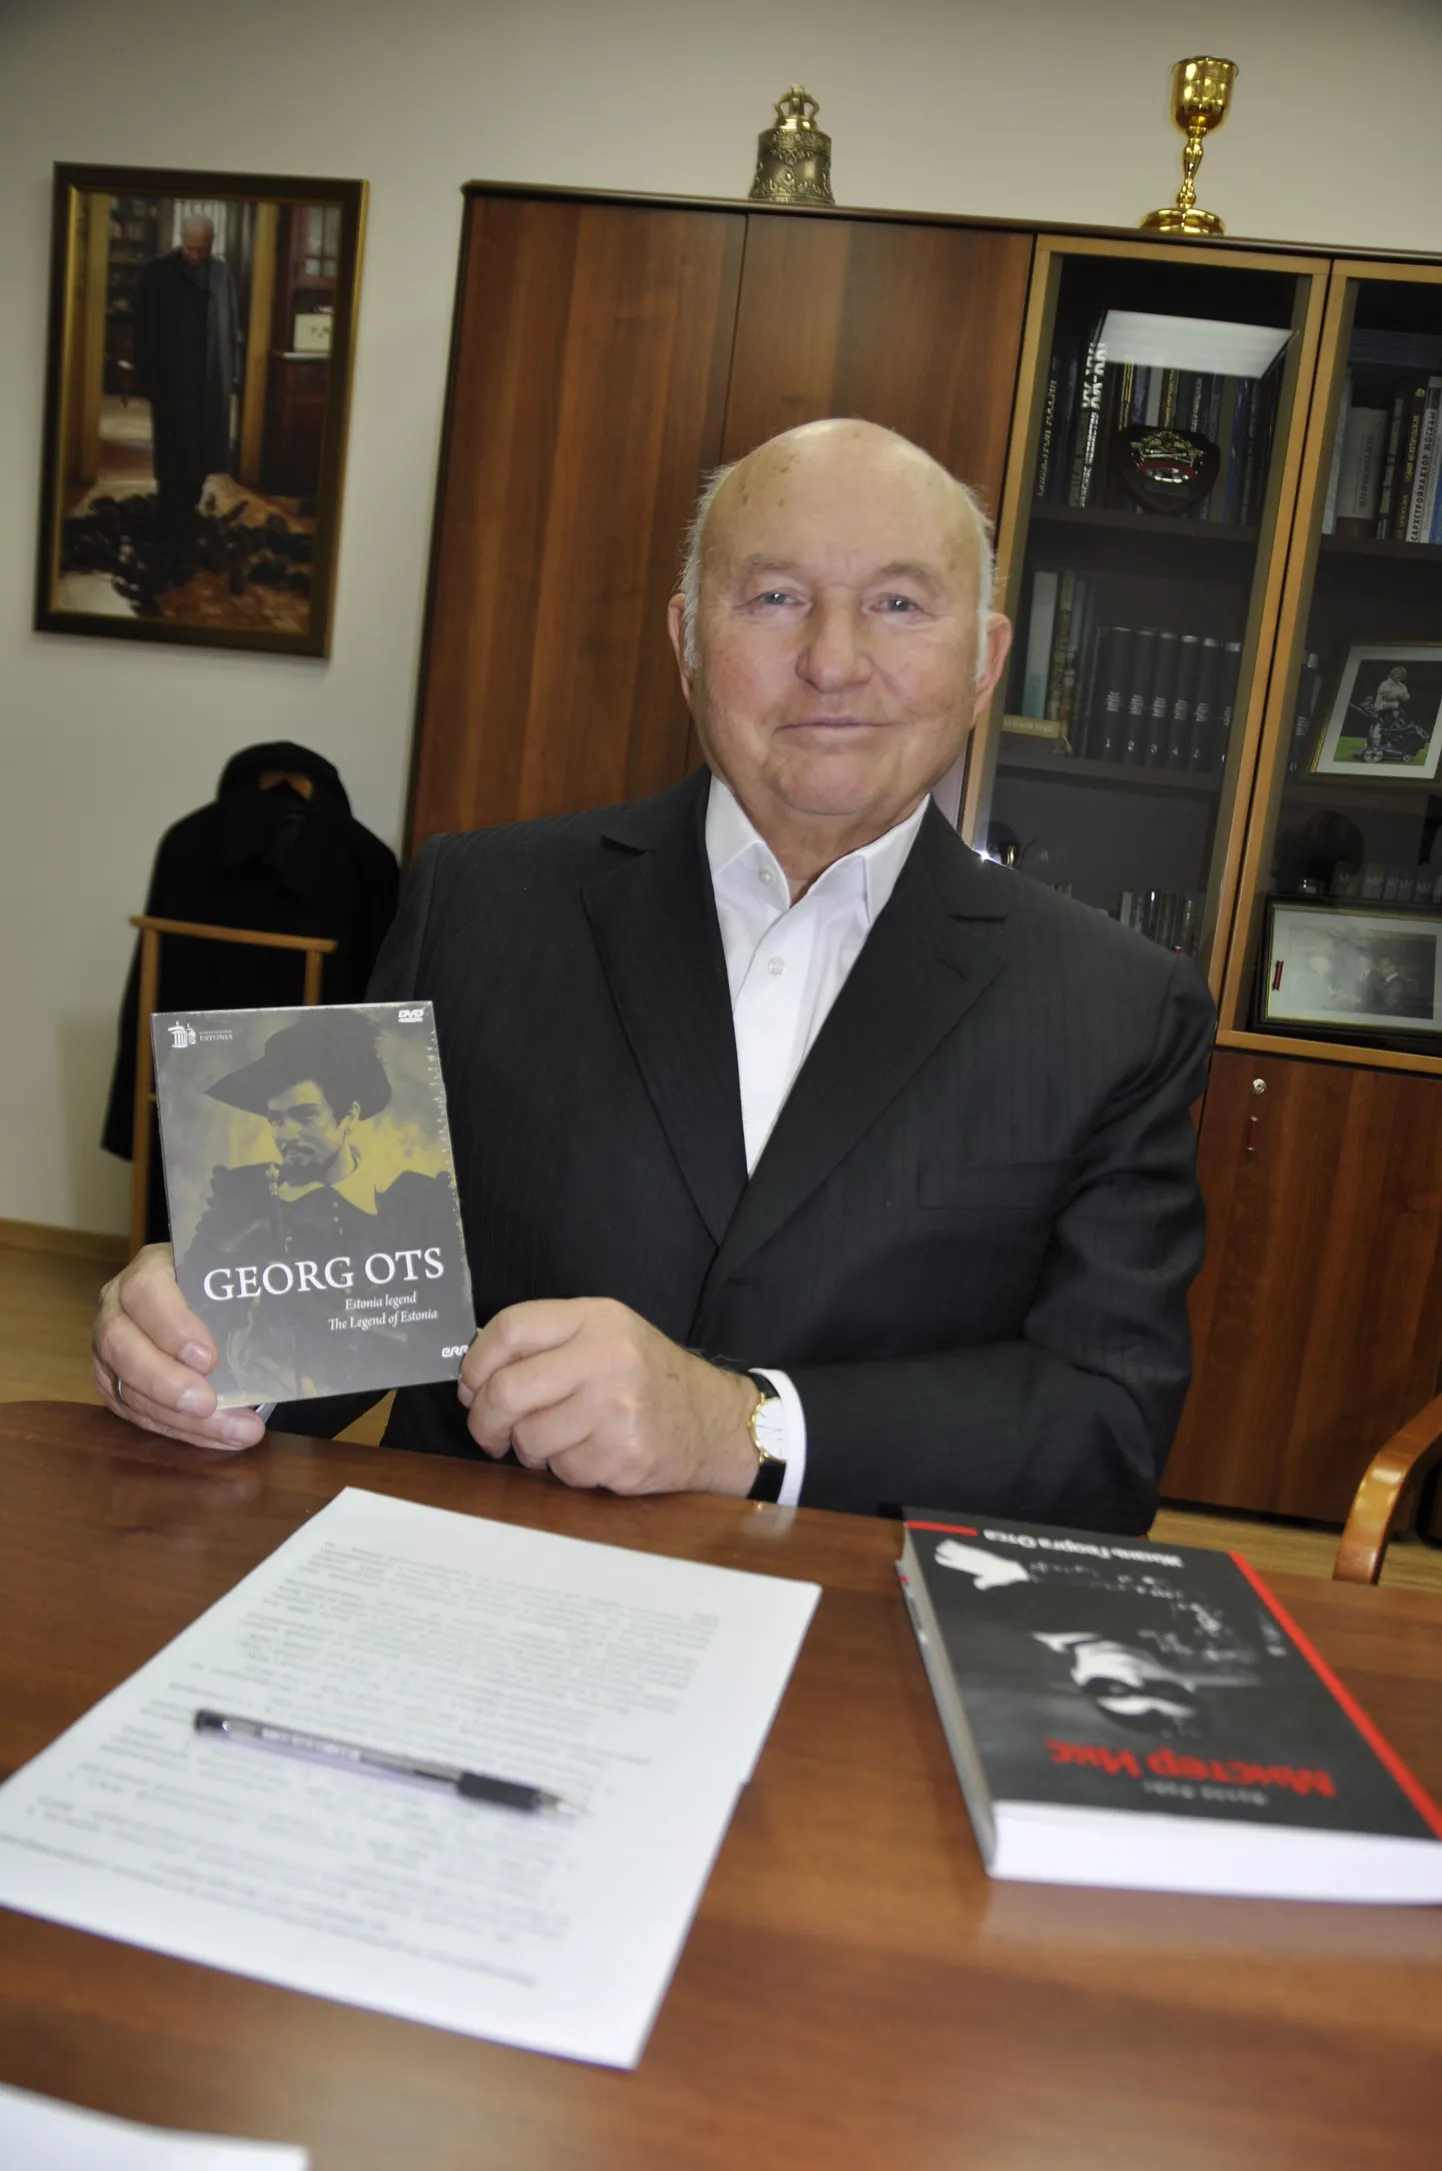 Postimees подарил Юрию Лужкову, преданному поклоннику Георга Отса, биографическую книгу о нем и DVD  с его ариями.